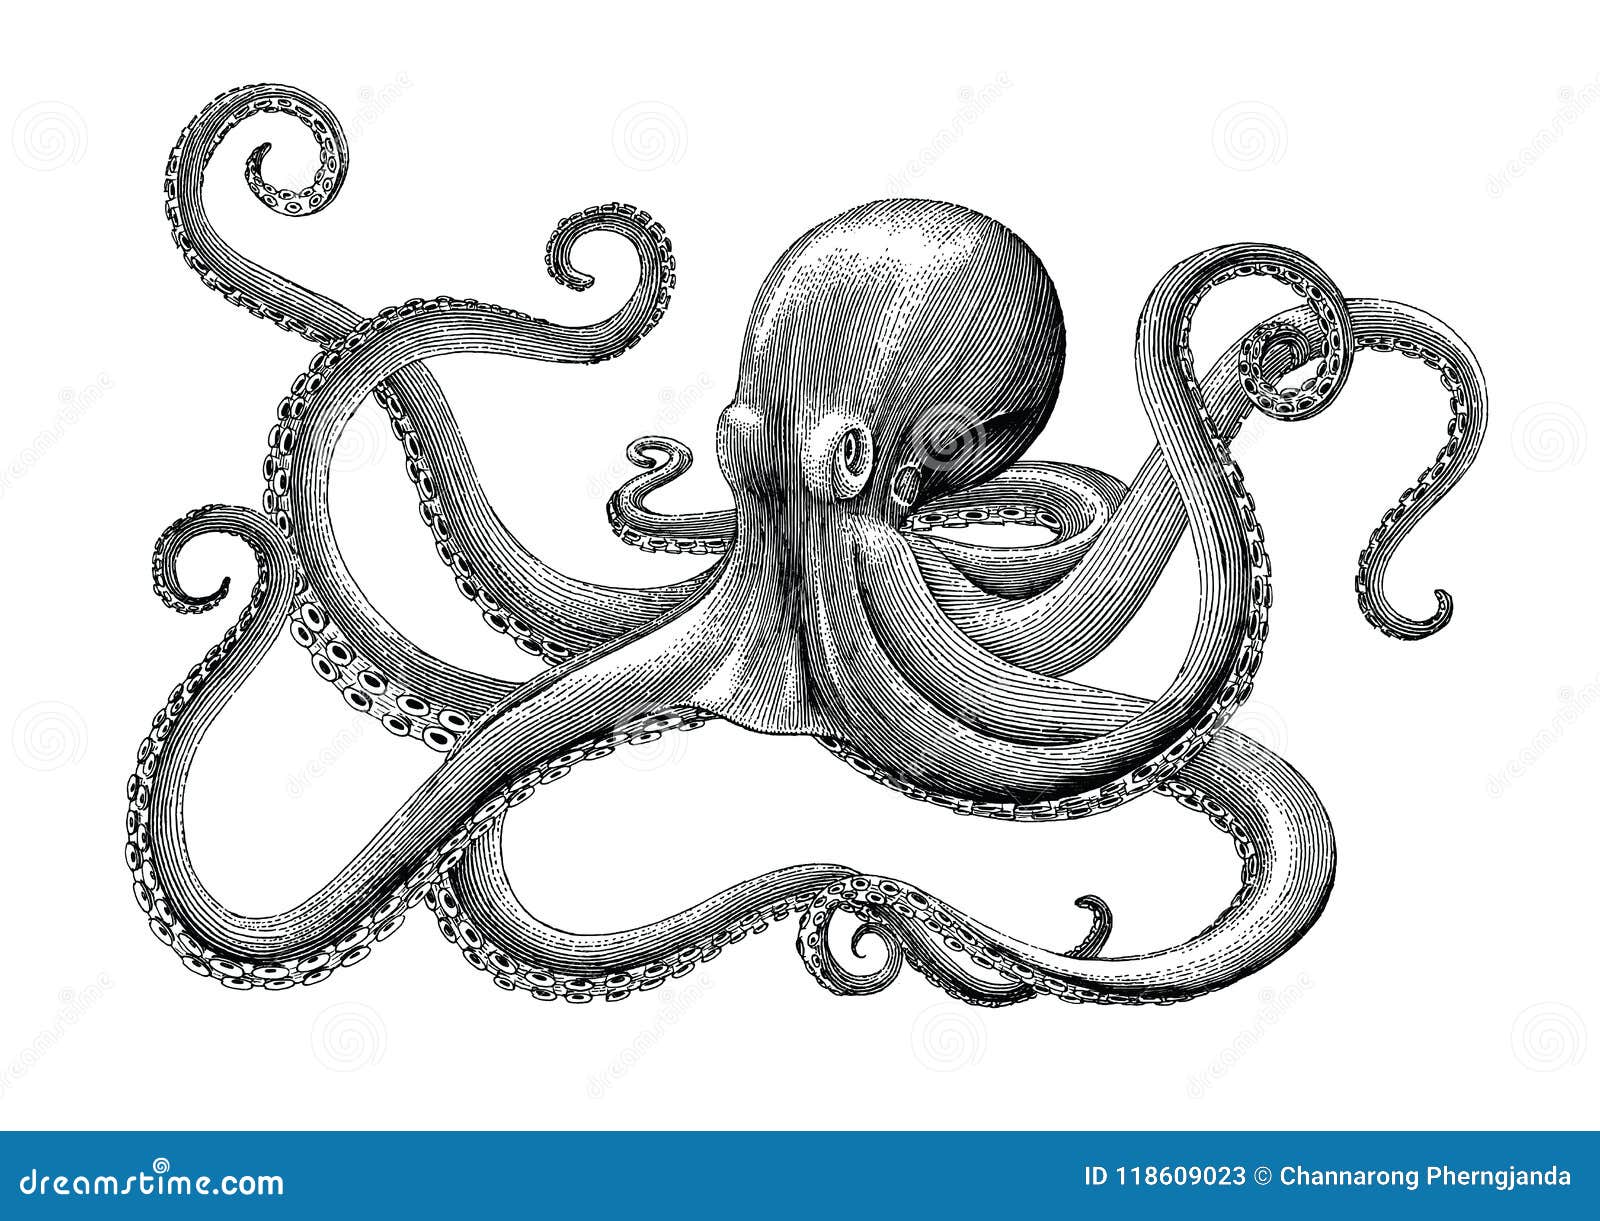 drawings of octopus